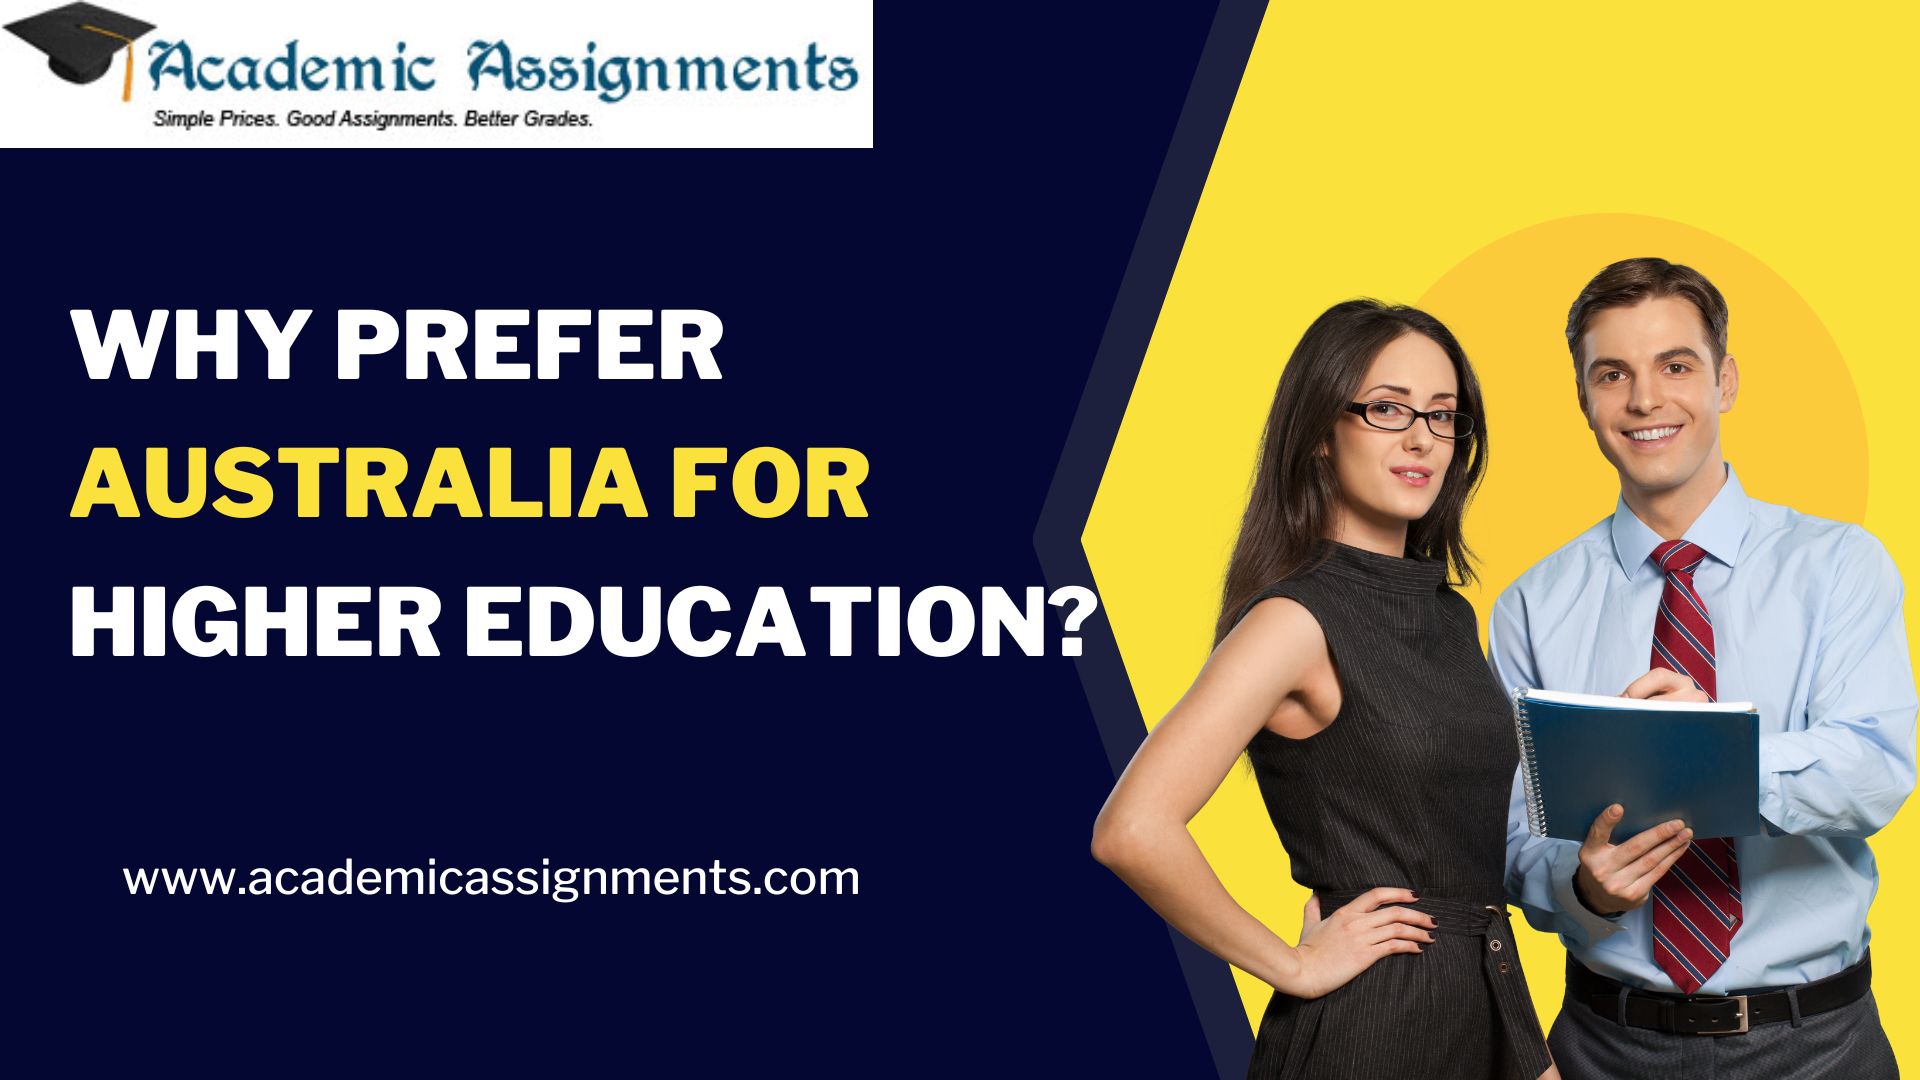 WHY PREFER AUSTRALIA FOR HIGHER EDUCATION